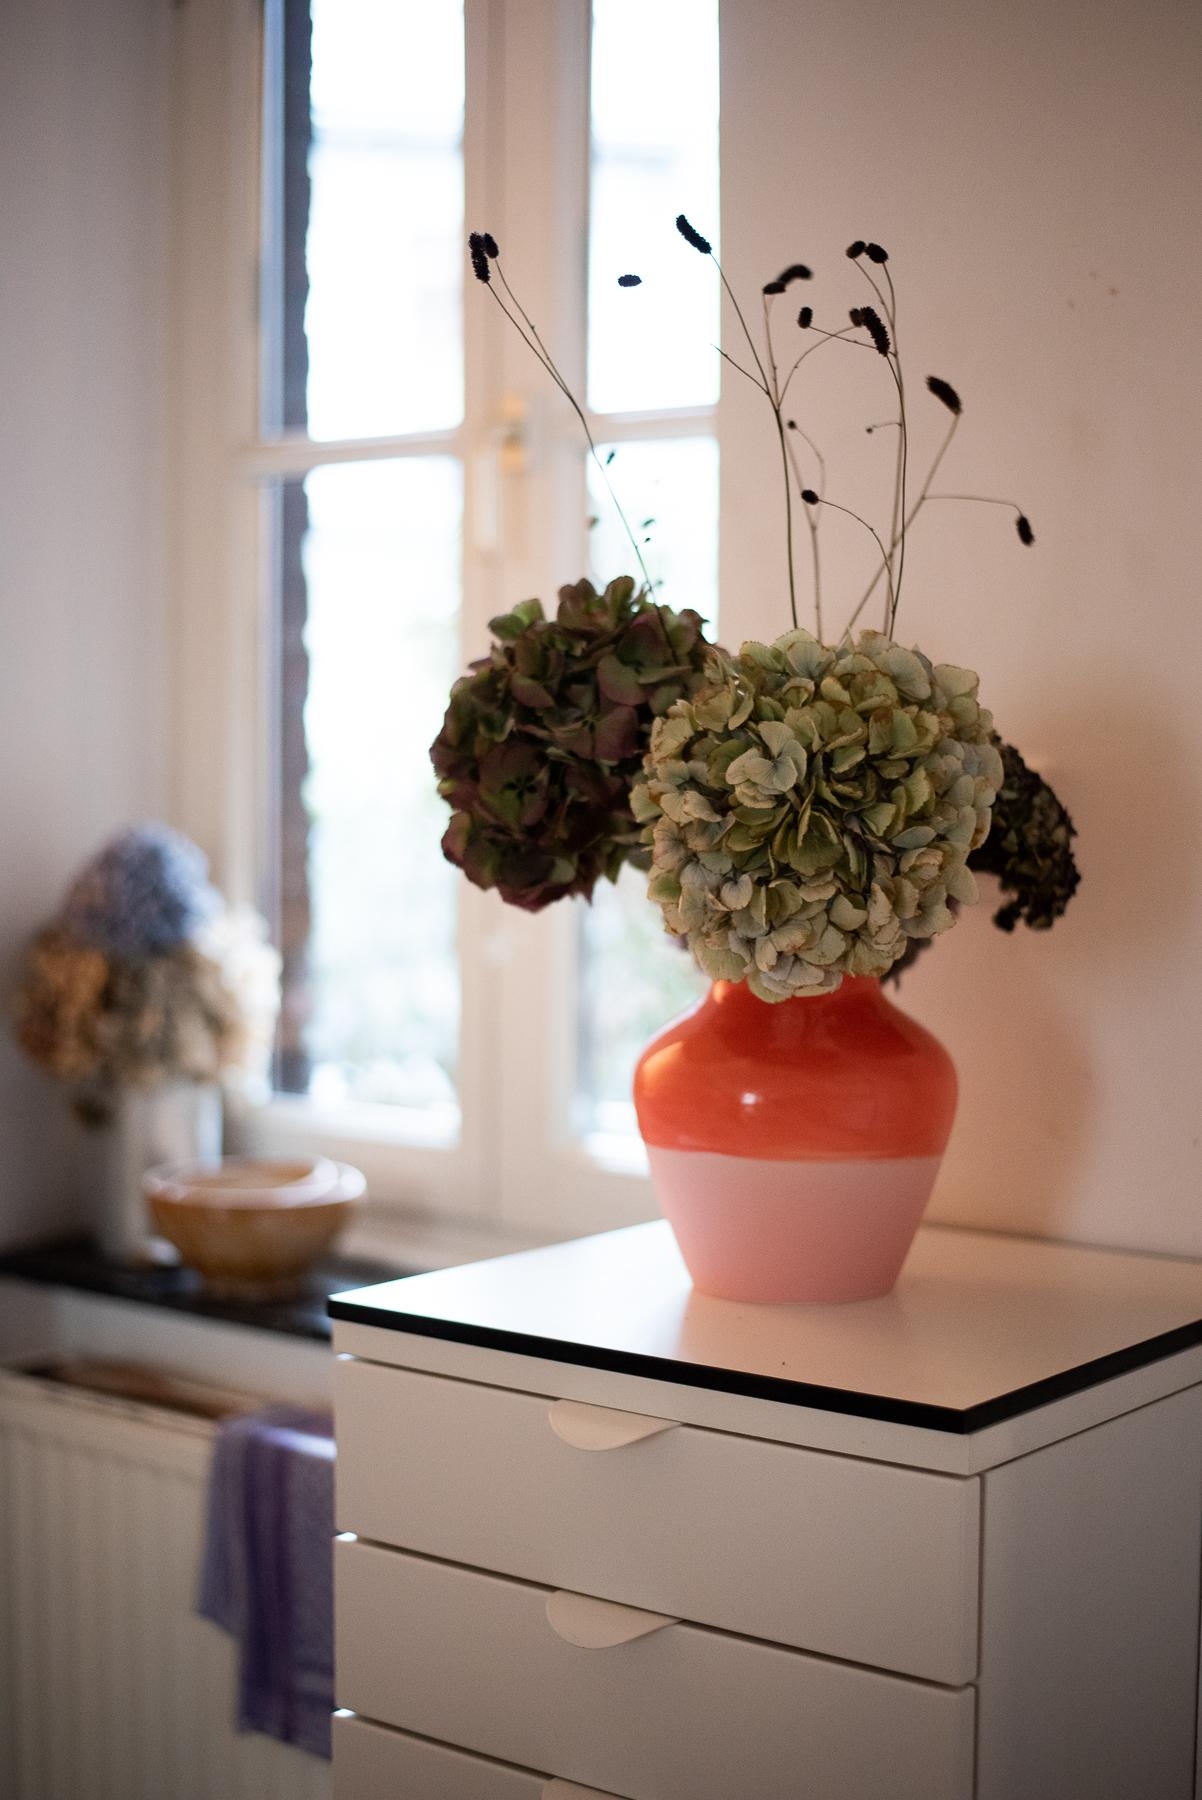 Mwin schönstet Weihnachtsgeschenk! #vase #trockenblumen #interiorstyle #dekoration #interior #küche